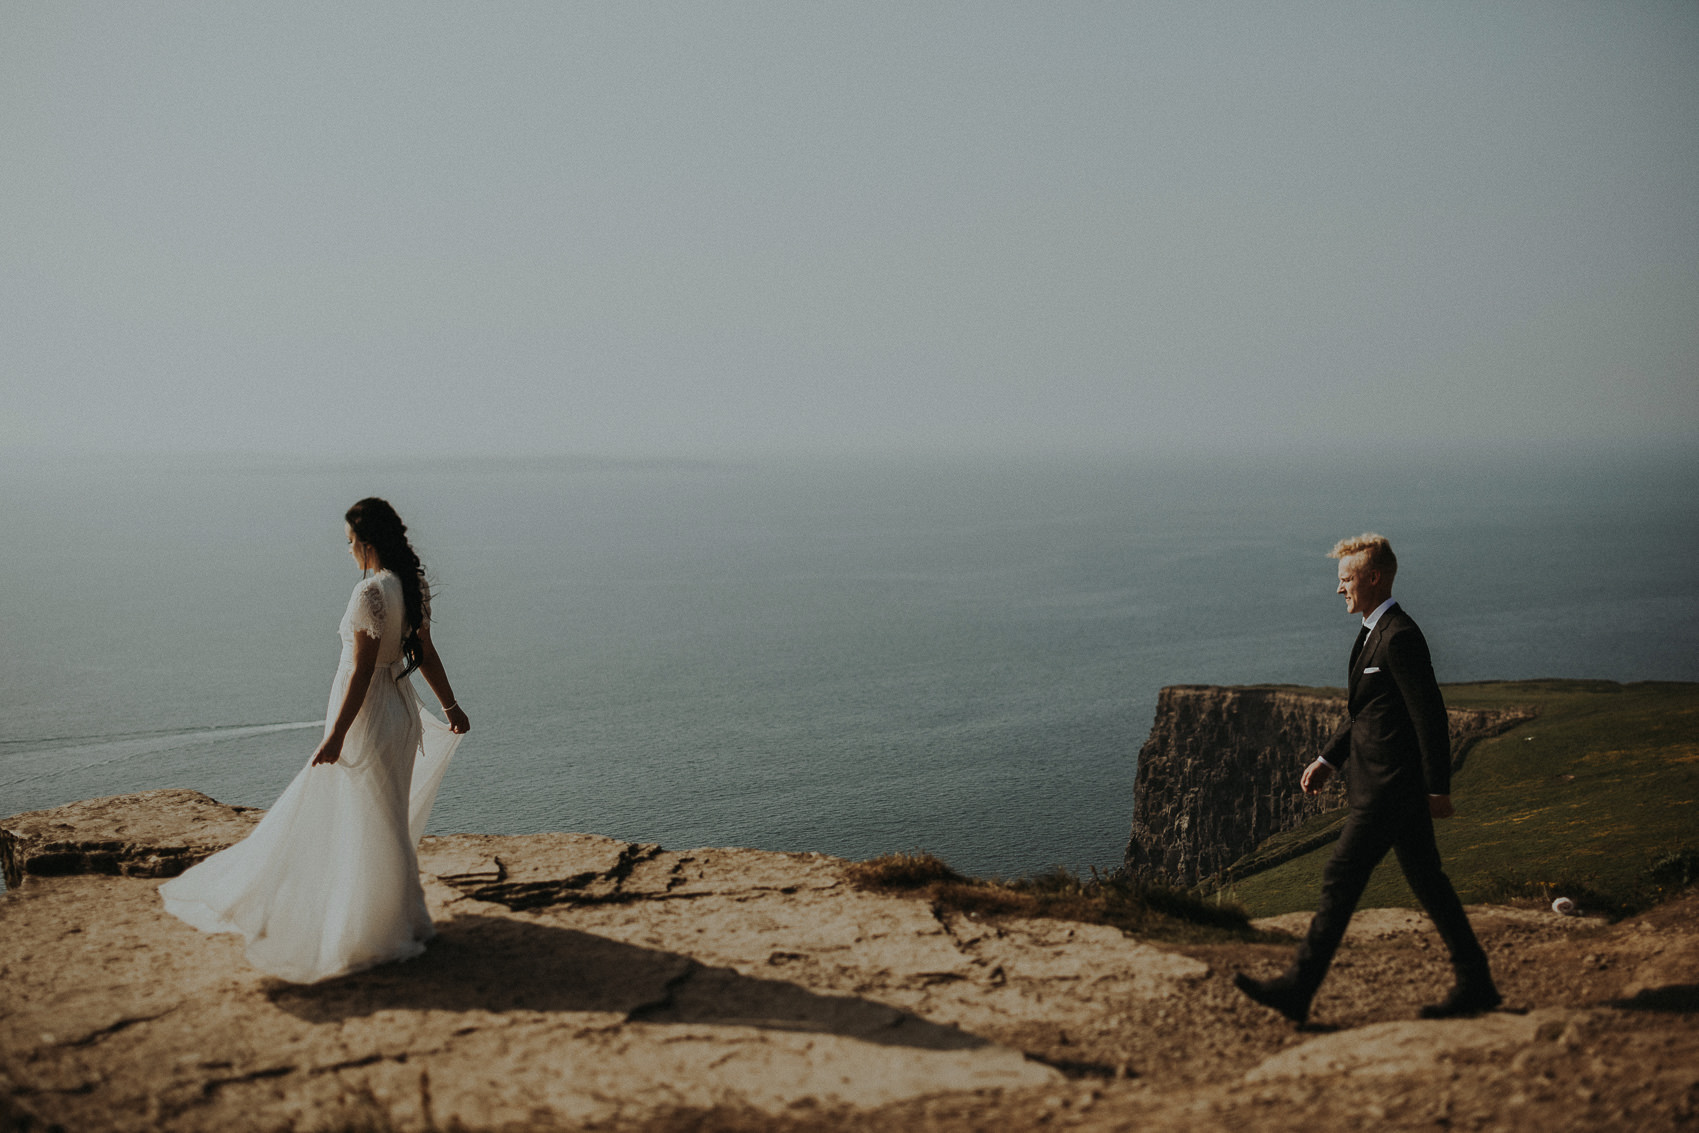 Irish Cliffs of Moher wedding Elopement shoot 681